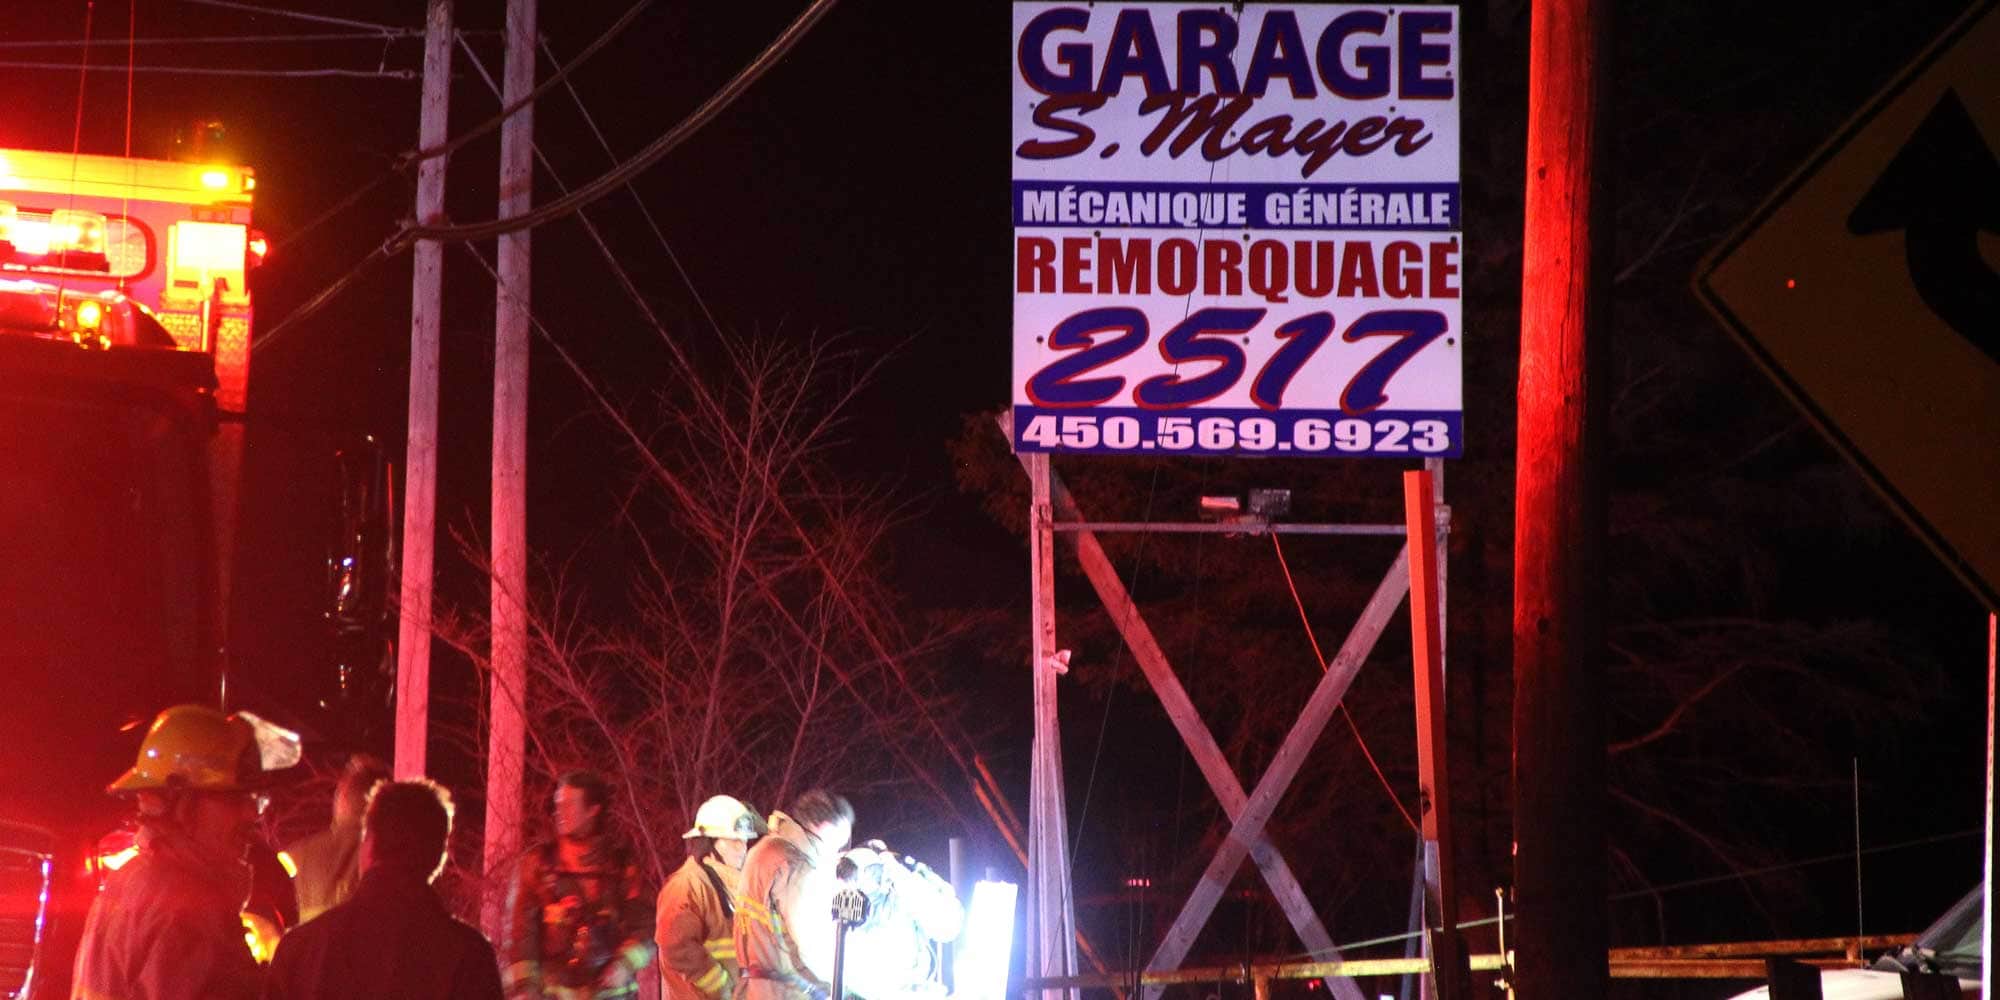 L'incendie a eu lieu au Garage S. Mayer, sur la route 158, à Sainte-Sophie, le soir du 8 mai 2016.